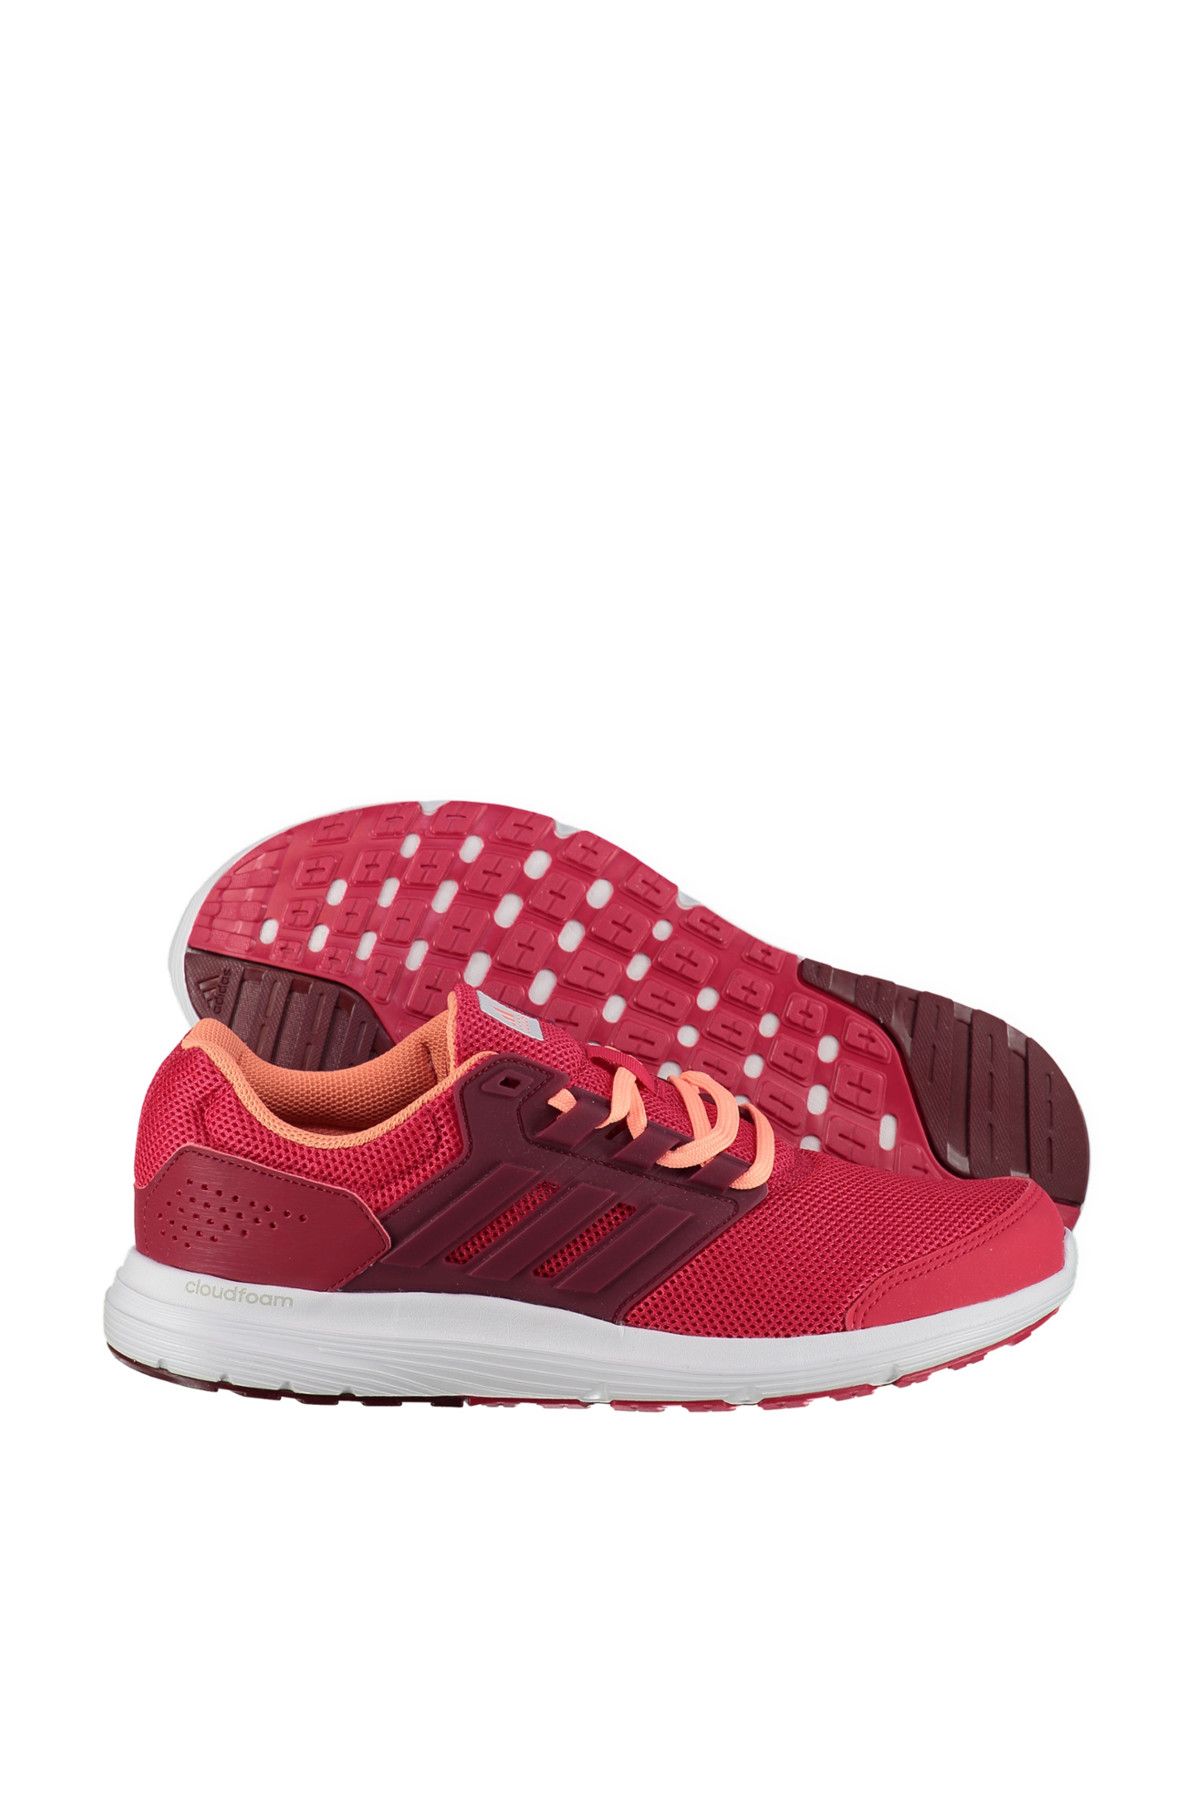 adidas Kadın Koşu Ayakkabı - Galaxy 4 - BY2848